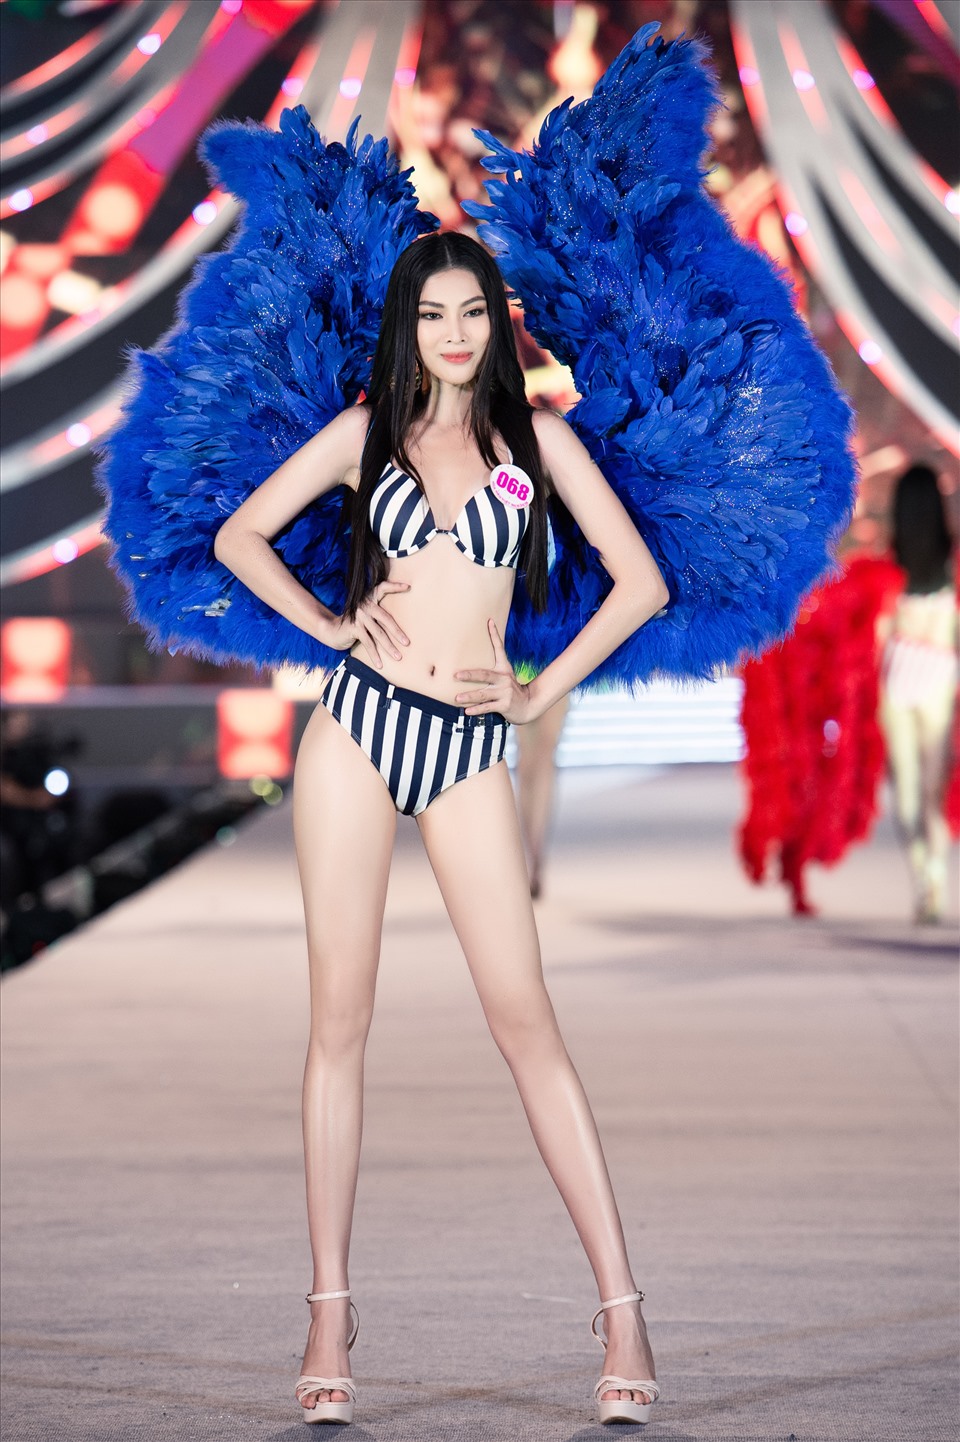 Nguyễn Lê Ngọc Thảo là thí sinh Hoa hậu Việt Nam 2020 được dự đoán có cơ hội cao giành giải “Người đẹp biển” năm nay.